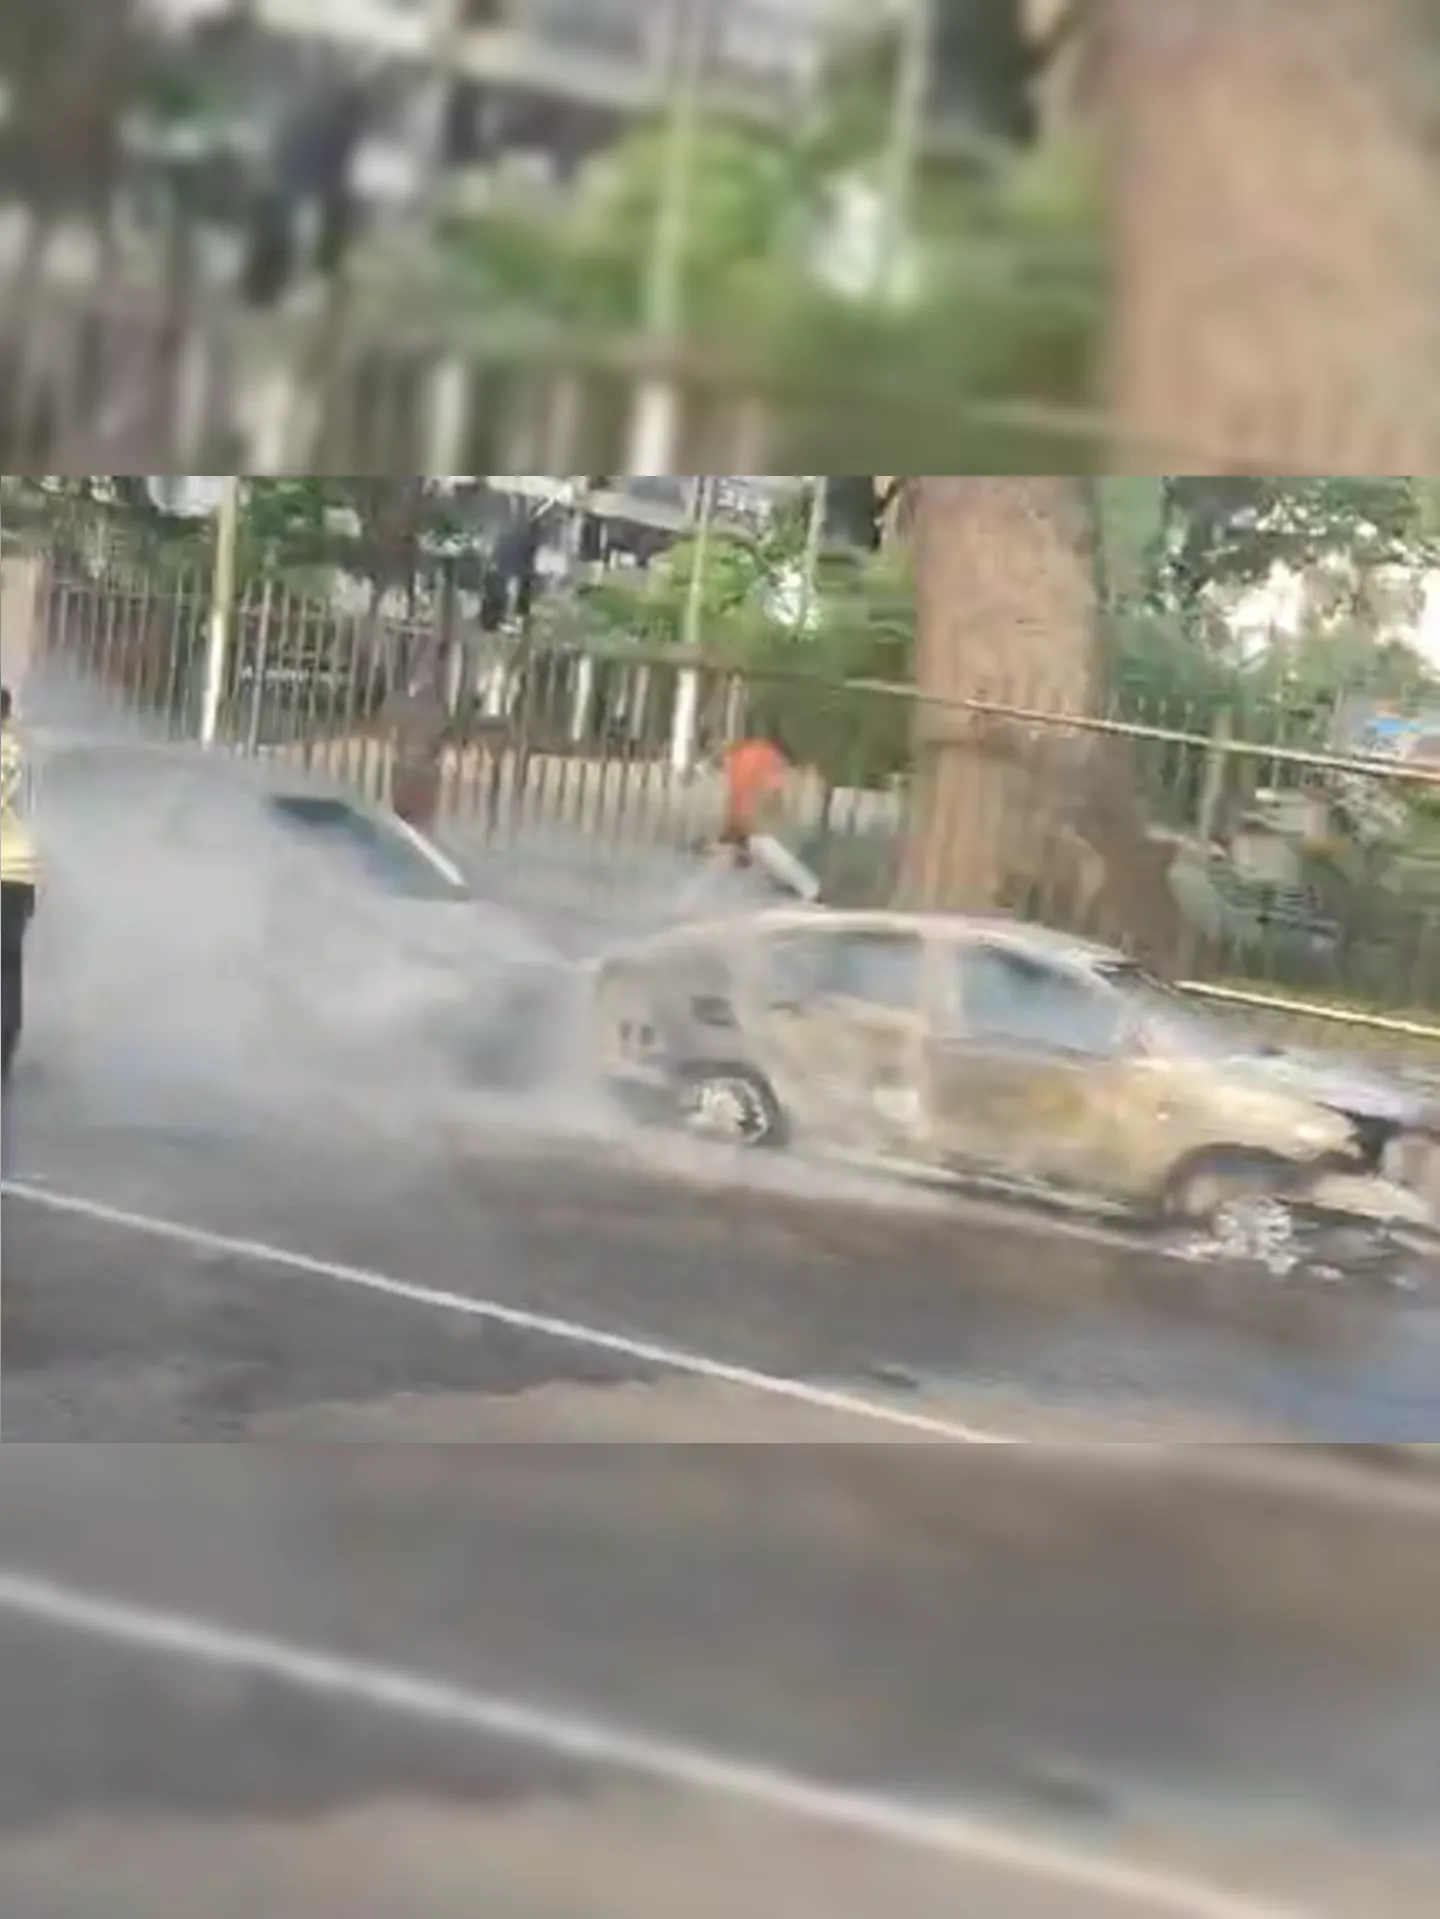 Três carros acabaram atingidos pelas chamas, sendo dois completamente destruídos